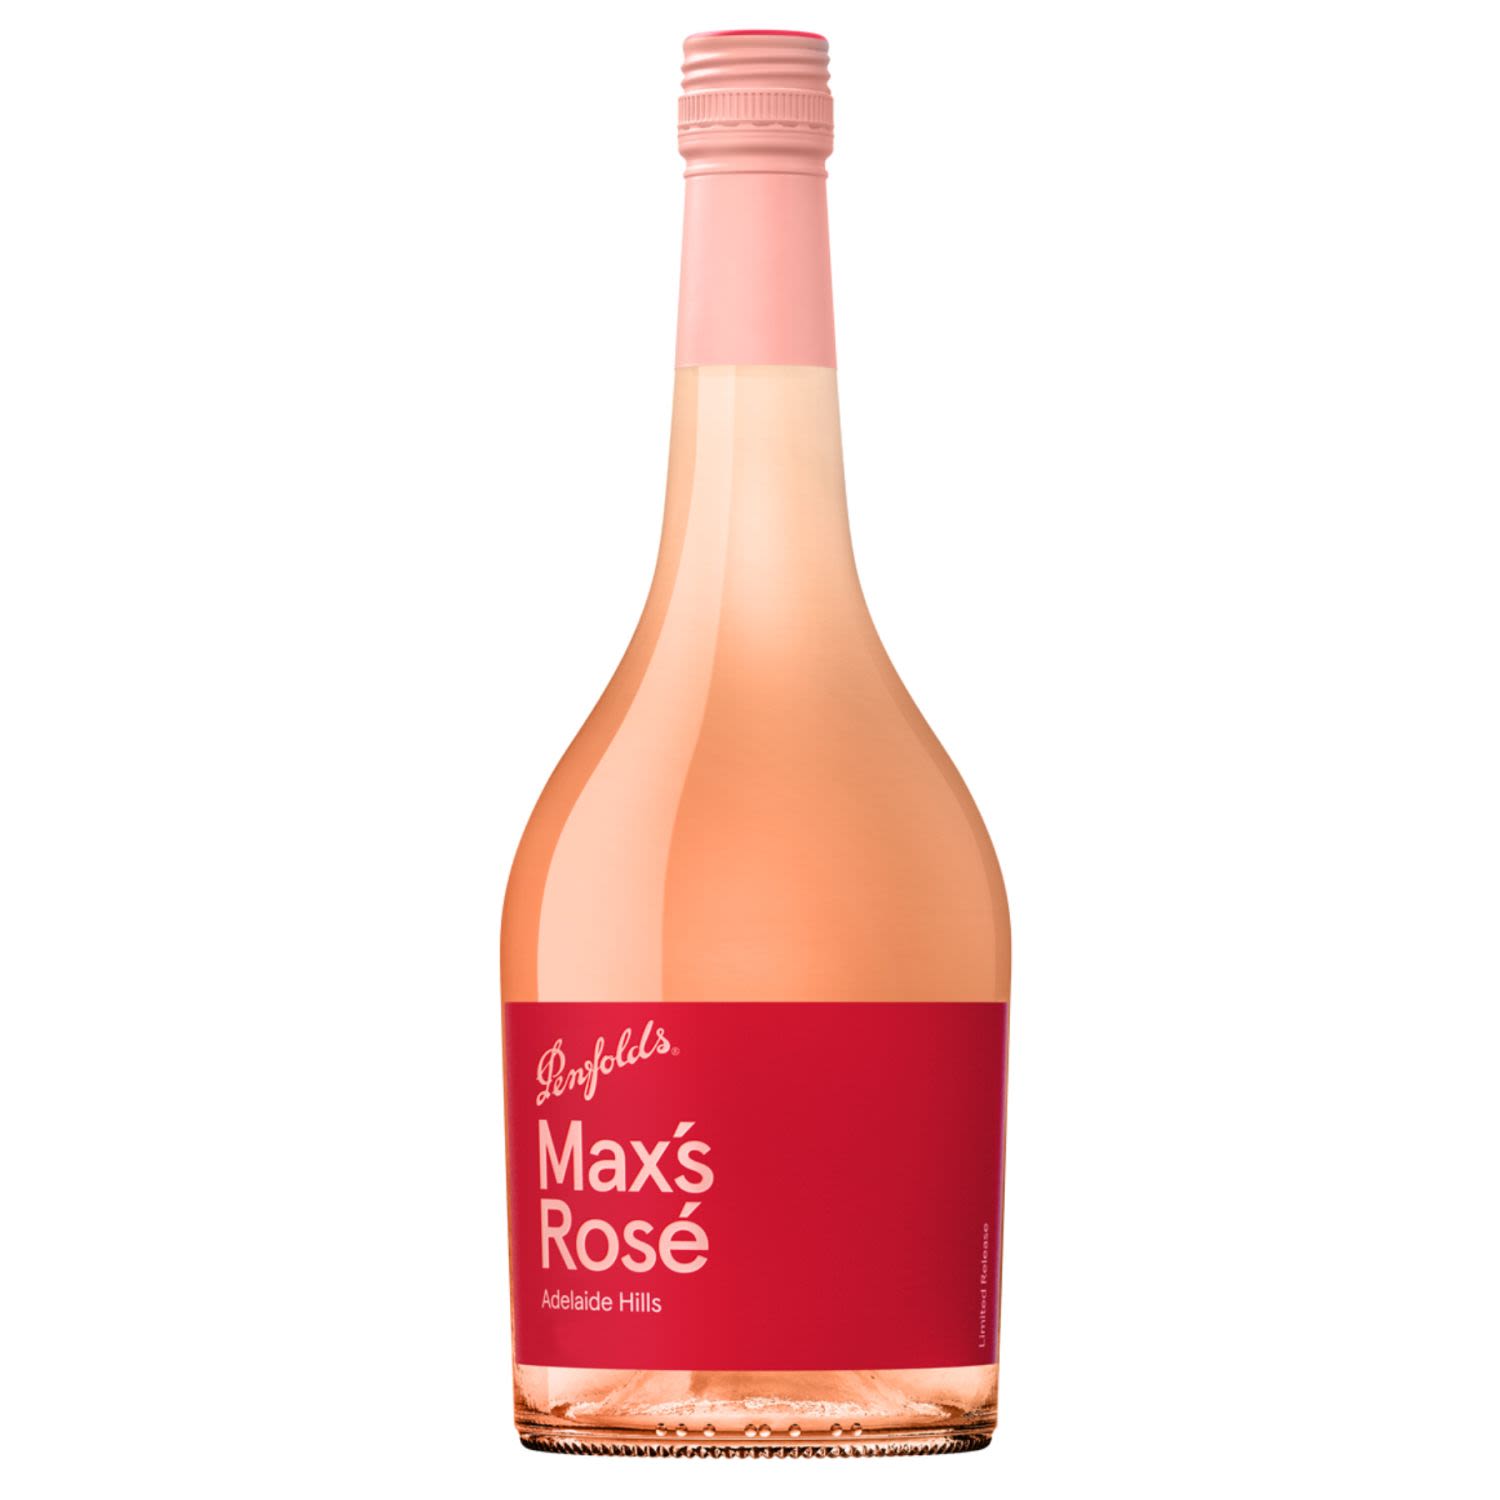 Penfolds Max's Rose 750mL Bottle